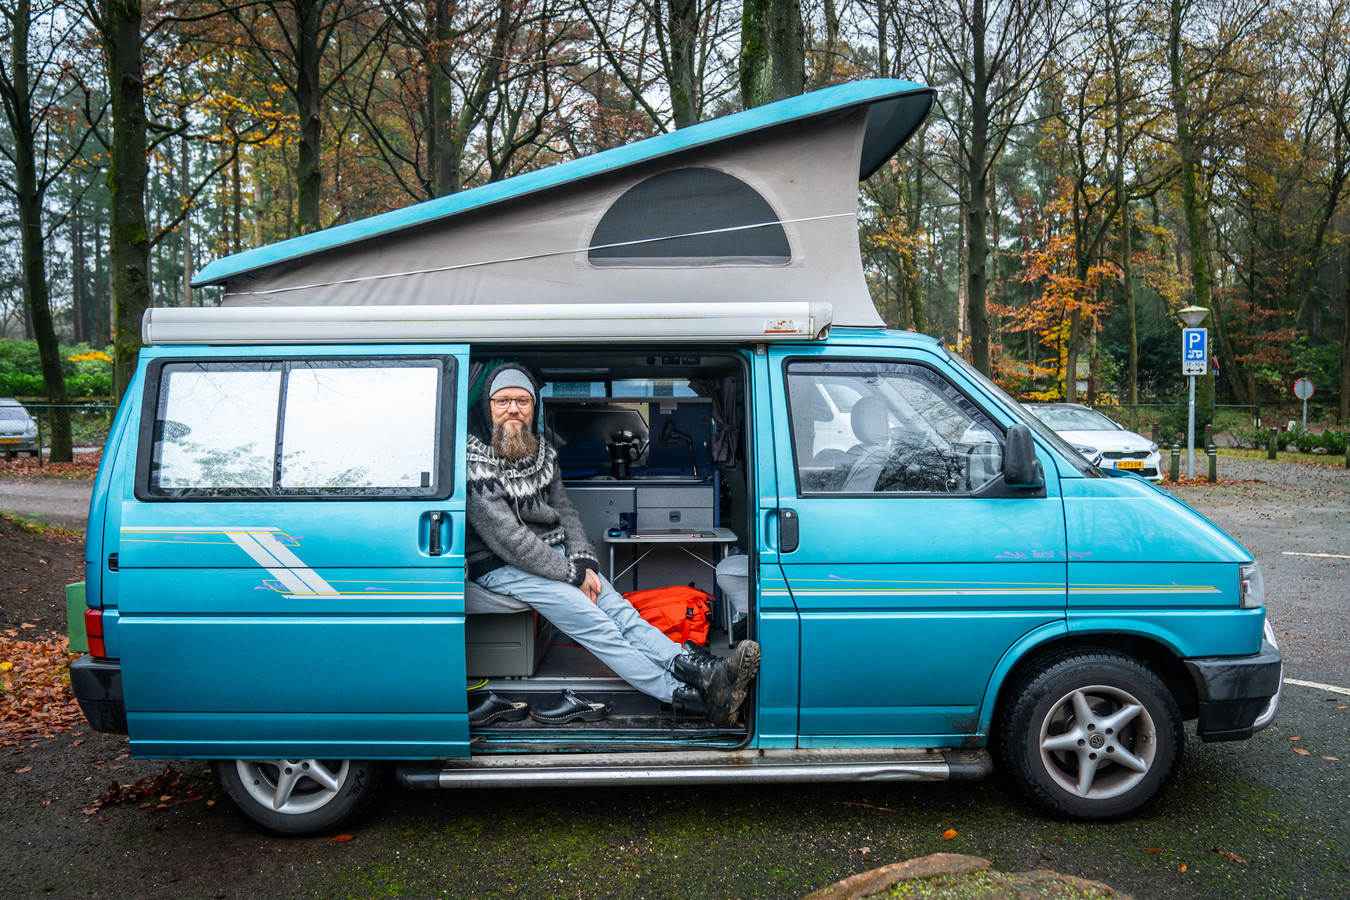 ritme Wacht even Zonnebrand Peter werd gek van de drukte rond zijn flatje, nu werkt hij vanuit zijn  camper in de bossen | Foto | destentor.nl